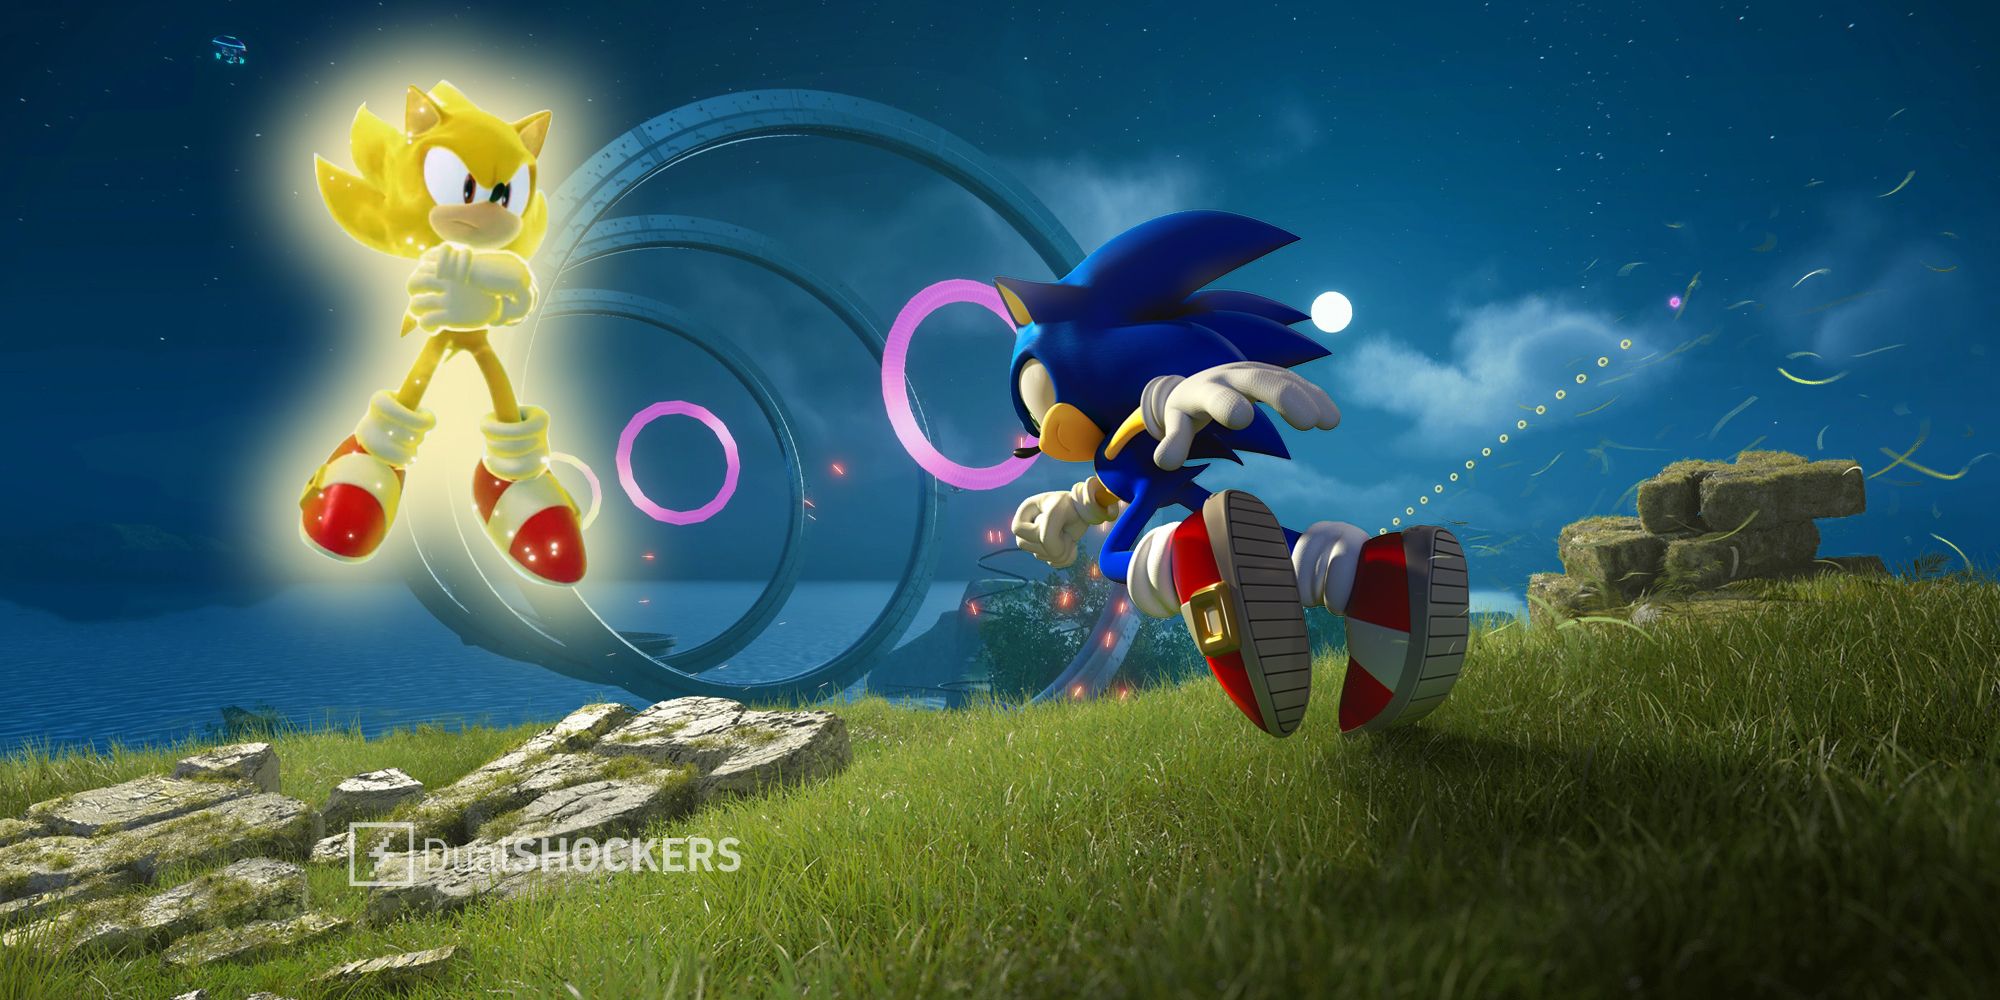 Sonic Frontiers X: Super Sonic Update 